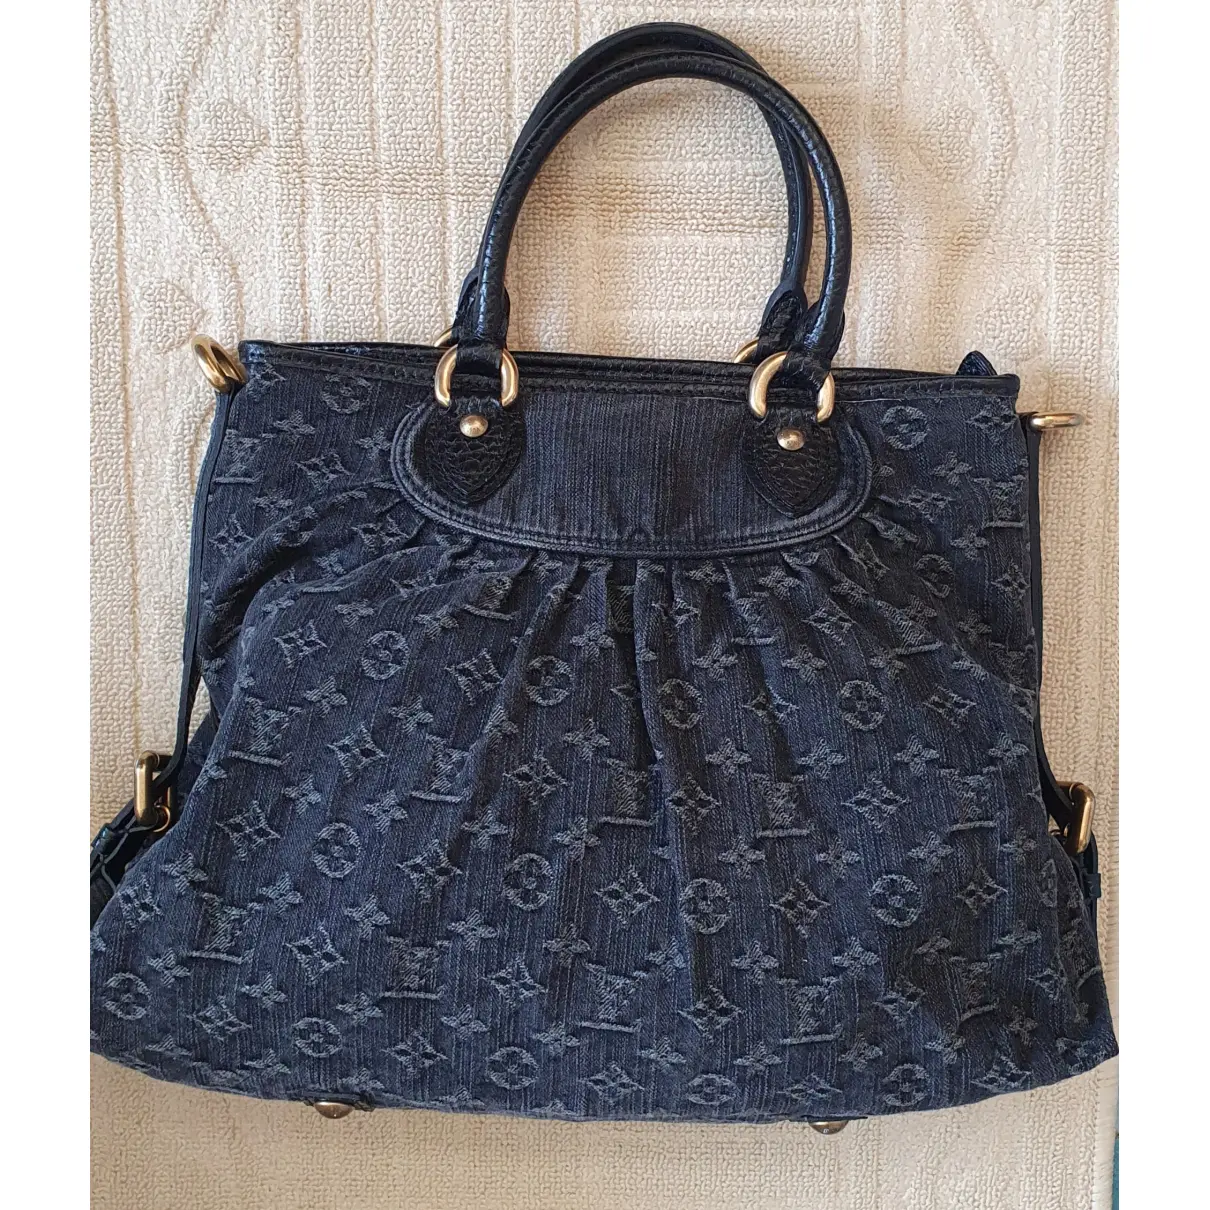 Buy Louis Vuitton Crossbody bag online